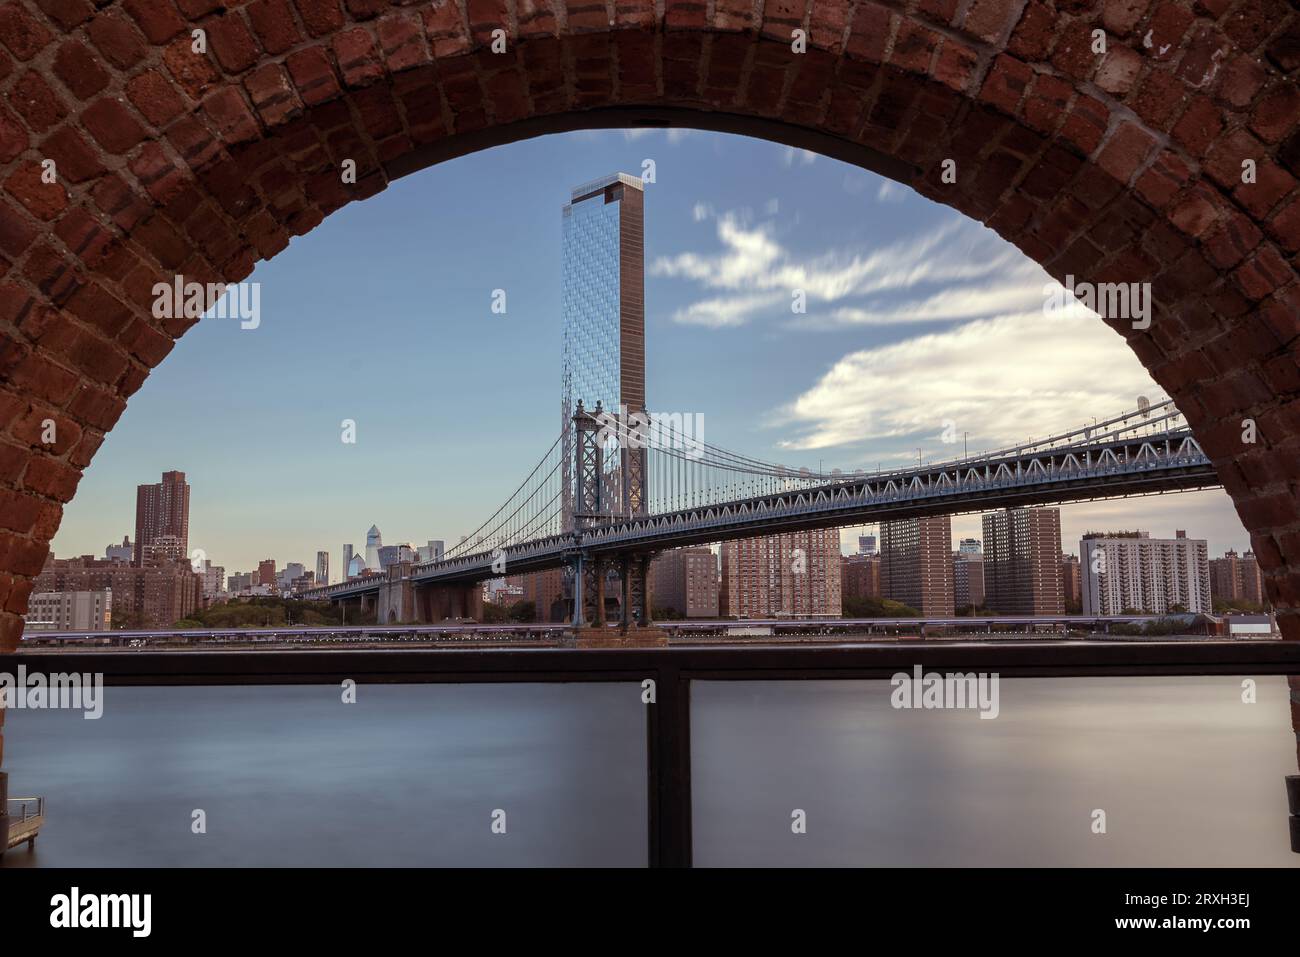 Vue encadrée sur le pont de Manhattan ce qui relie Brooklyn à Manhattan. Il s'agit d'un pont de 2 niveaux pour les métros, les autobus, les voitures et les camions. Banque D'Images